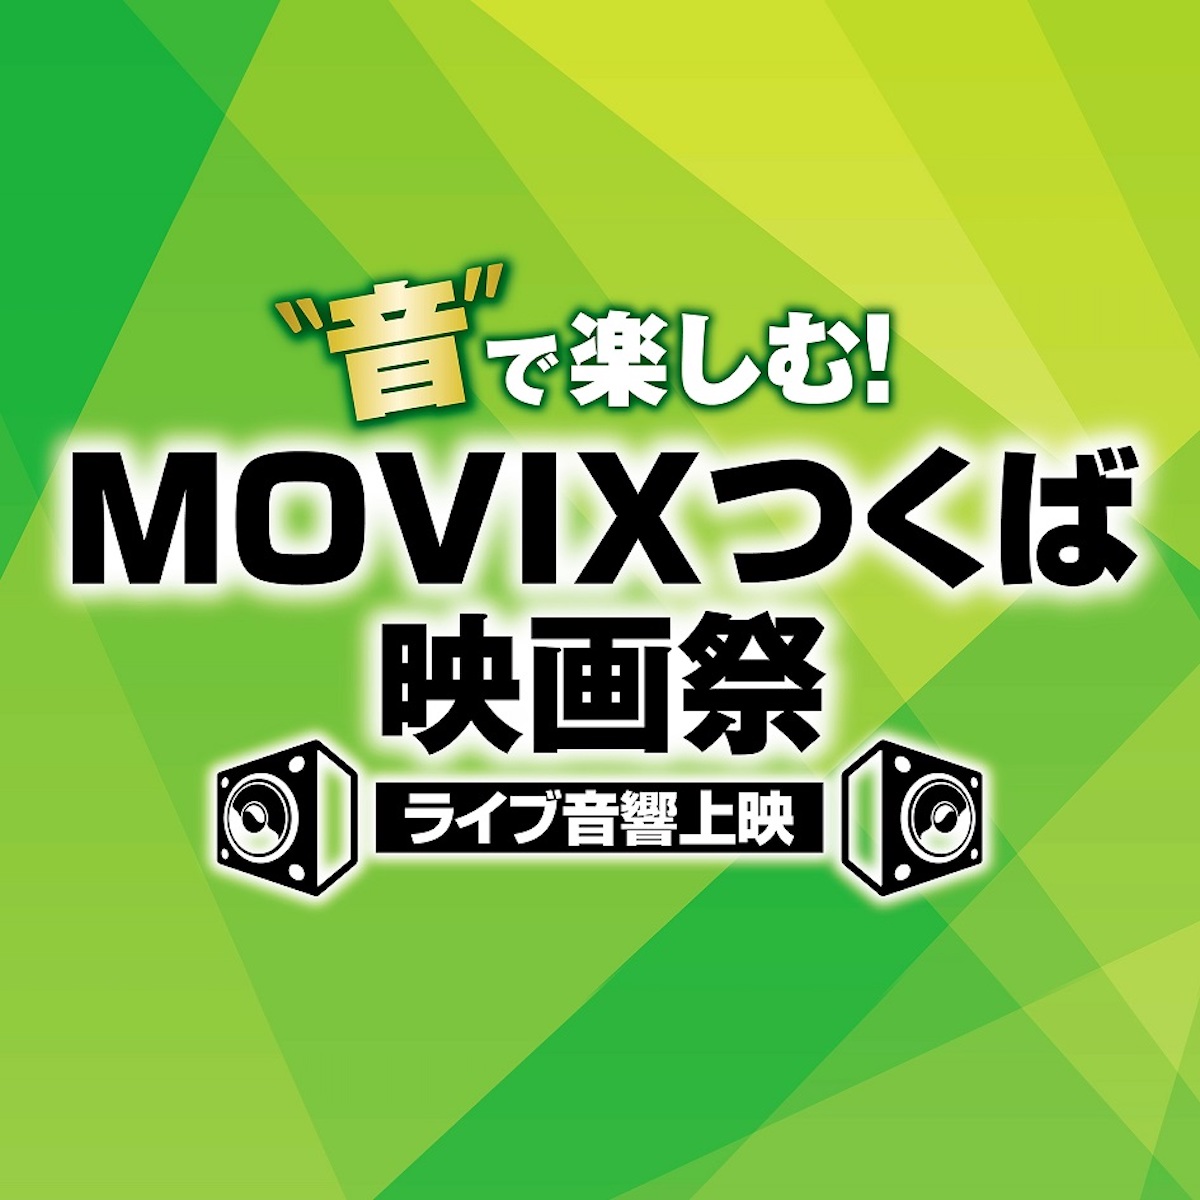 「MOVIXつくば映画祭」10月26日より開催